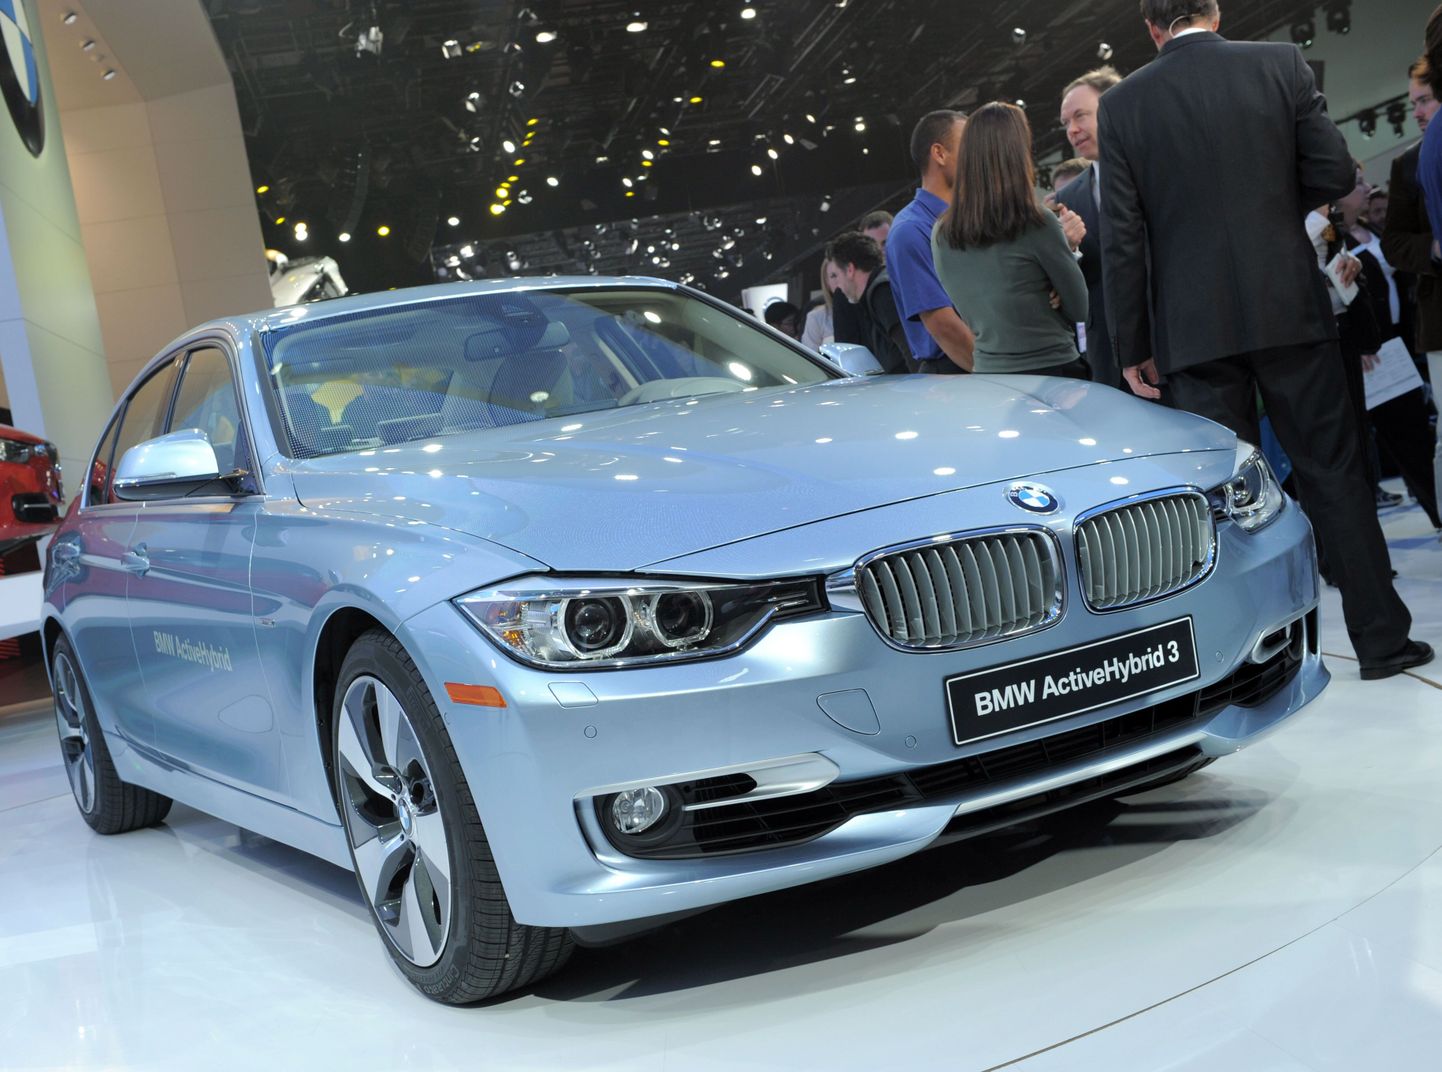 BMW Active Hybrid 3 Põhja-Ameerika rahvusvahelisel autonäitusel Detroidis tänavu jaanuaris.